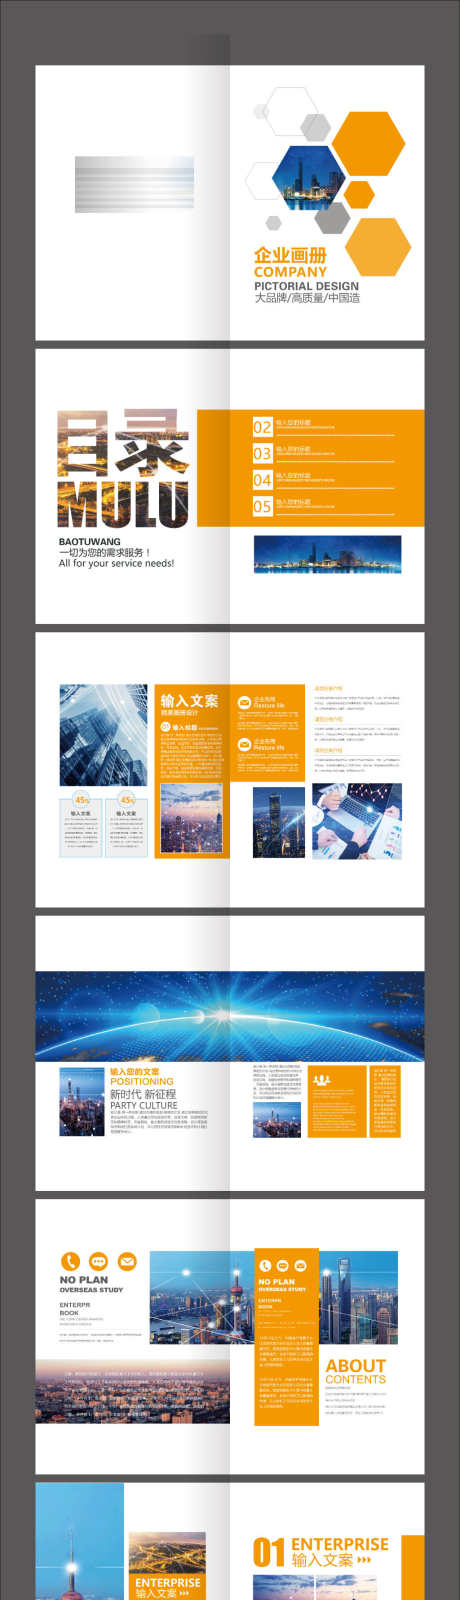 橙色企业项目营销宣传画册_源文件下载_AI格式_2126X11087像素-版式,图片,杂志,画册,科技,企业-作品编号:2024010409388646-源文件库-ywjfx.cn